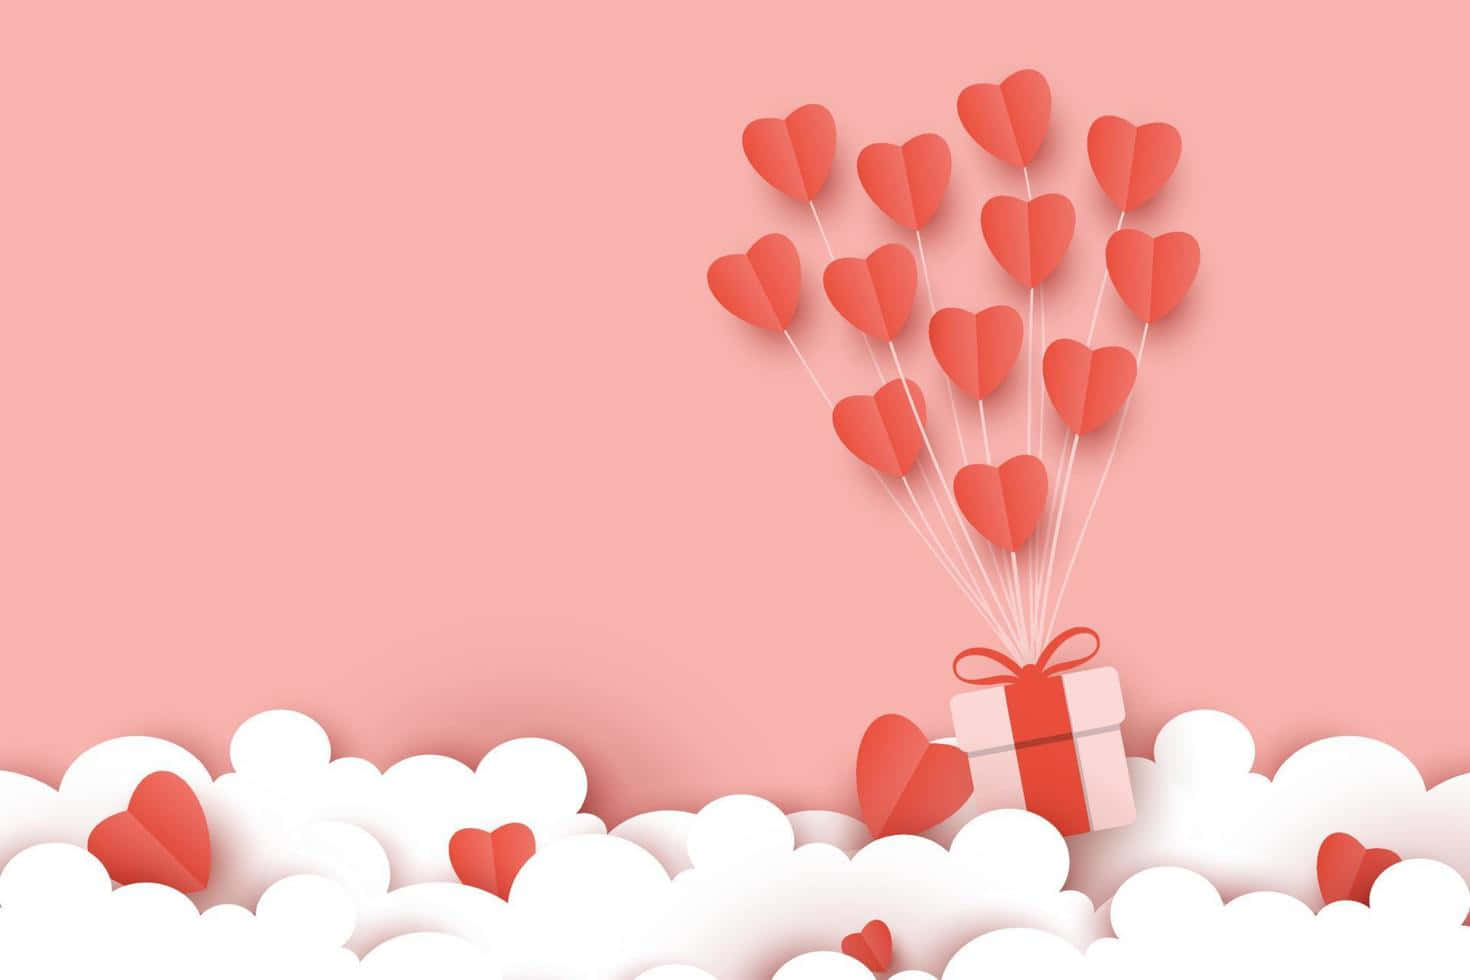 Süßesvalentinstagsgeschenk Mit Herzförmigen Luftballon-vektorgrafiken Wallpaper